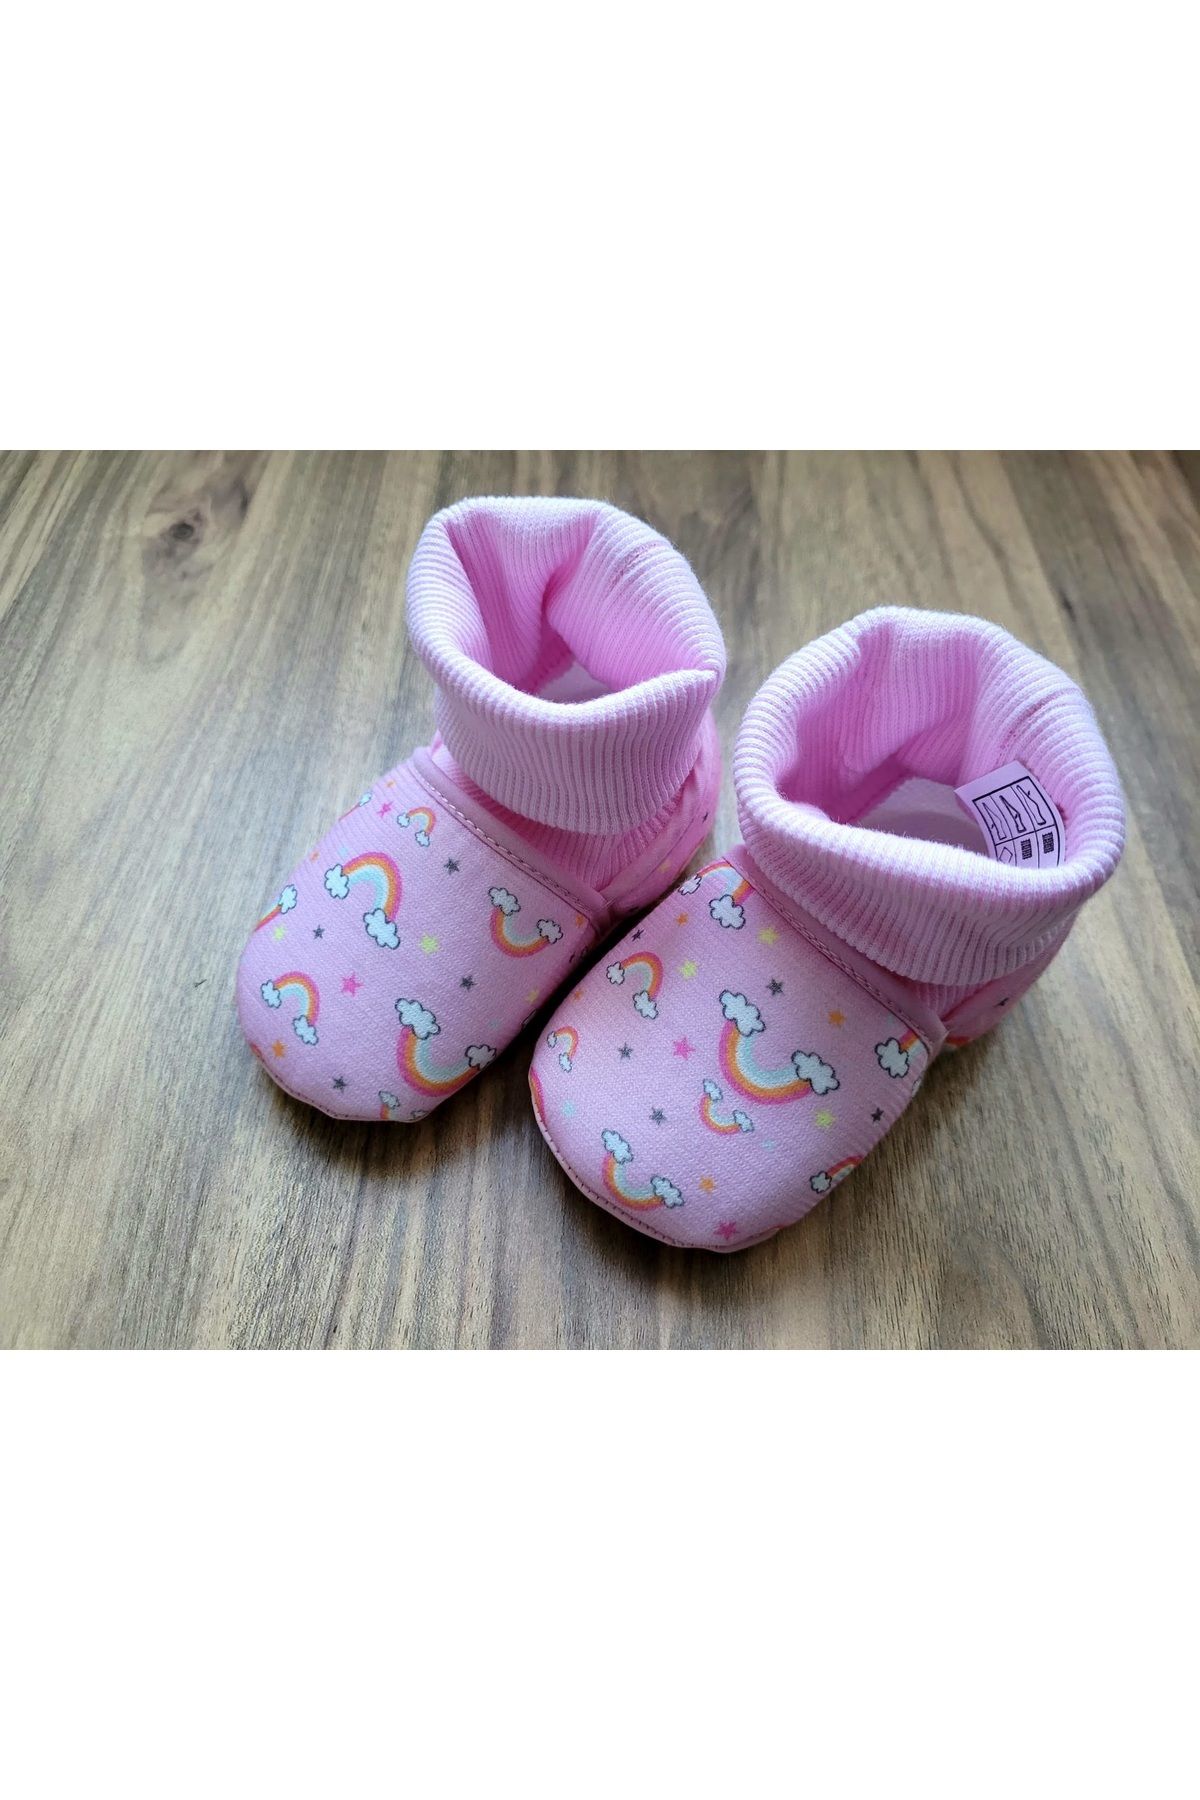 Funny Baby gökkuşağı desenli kız bebek panduf ev ayakkabısı